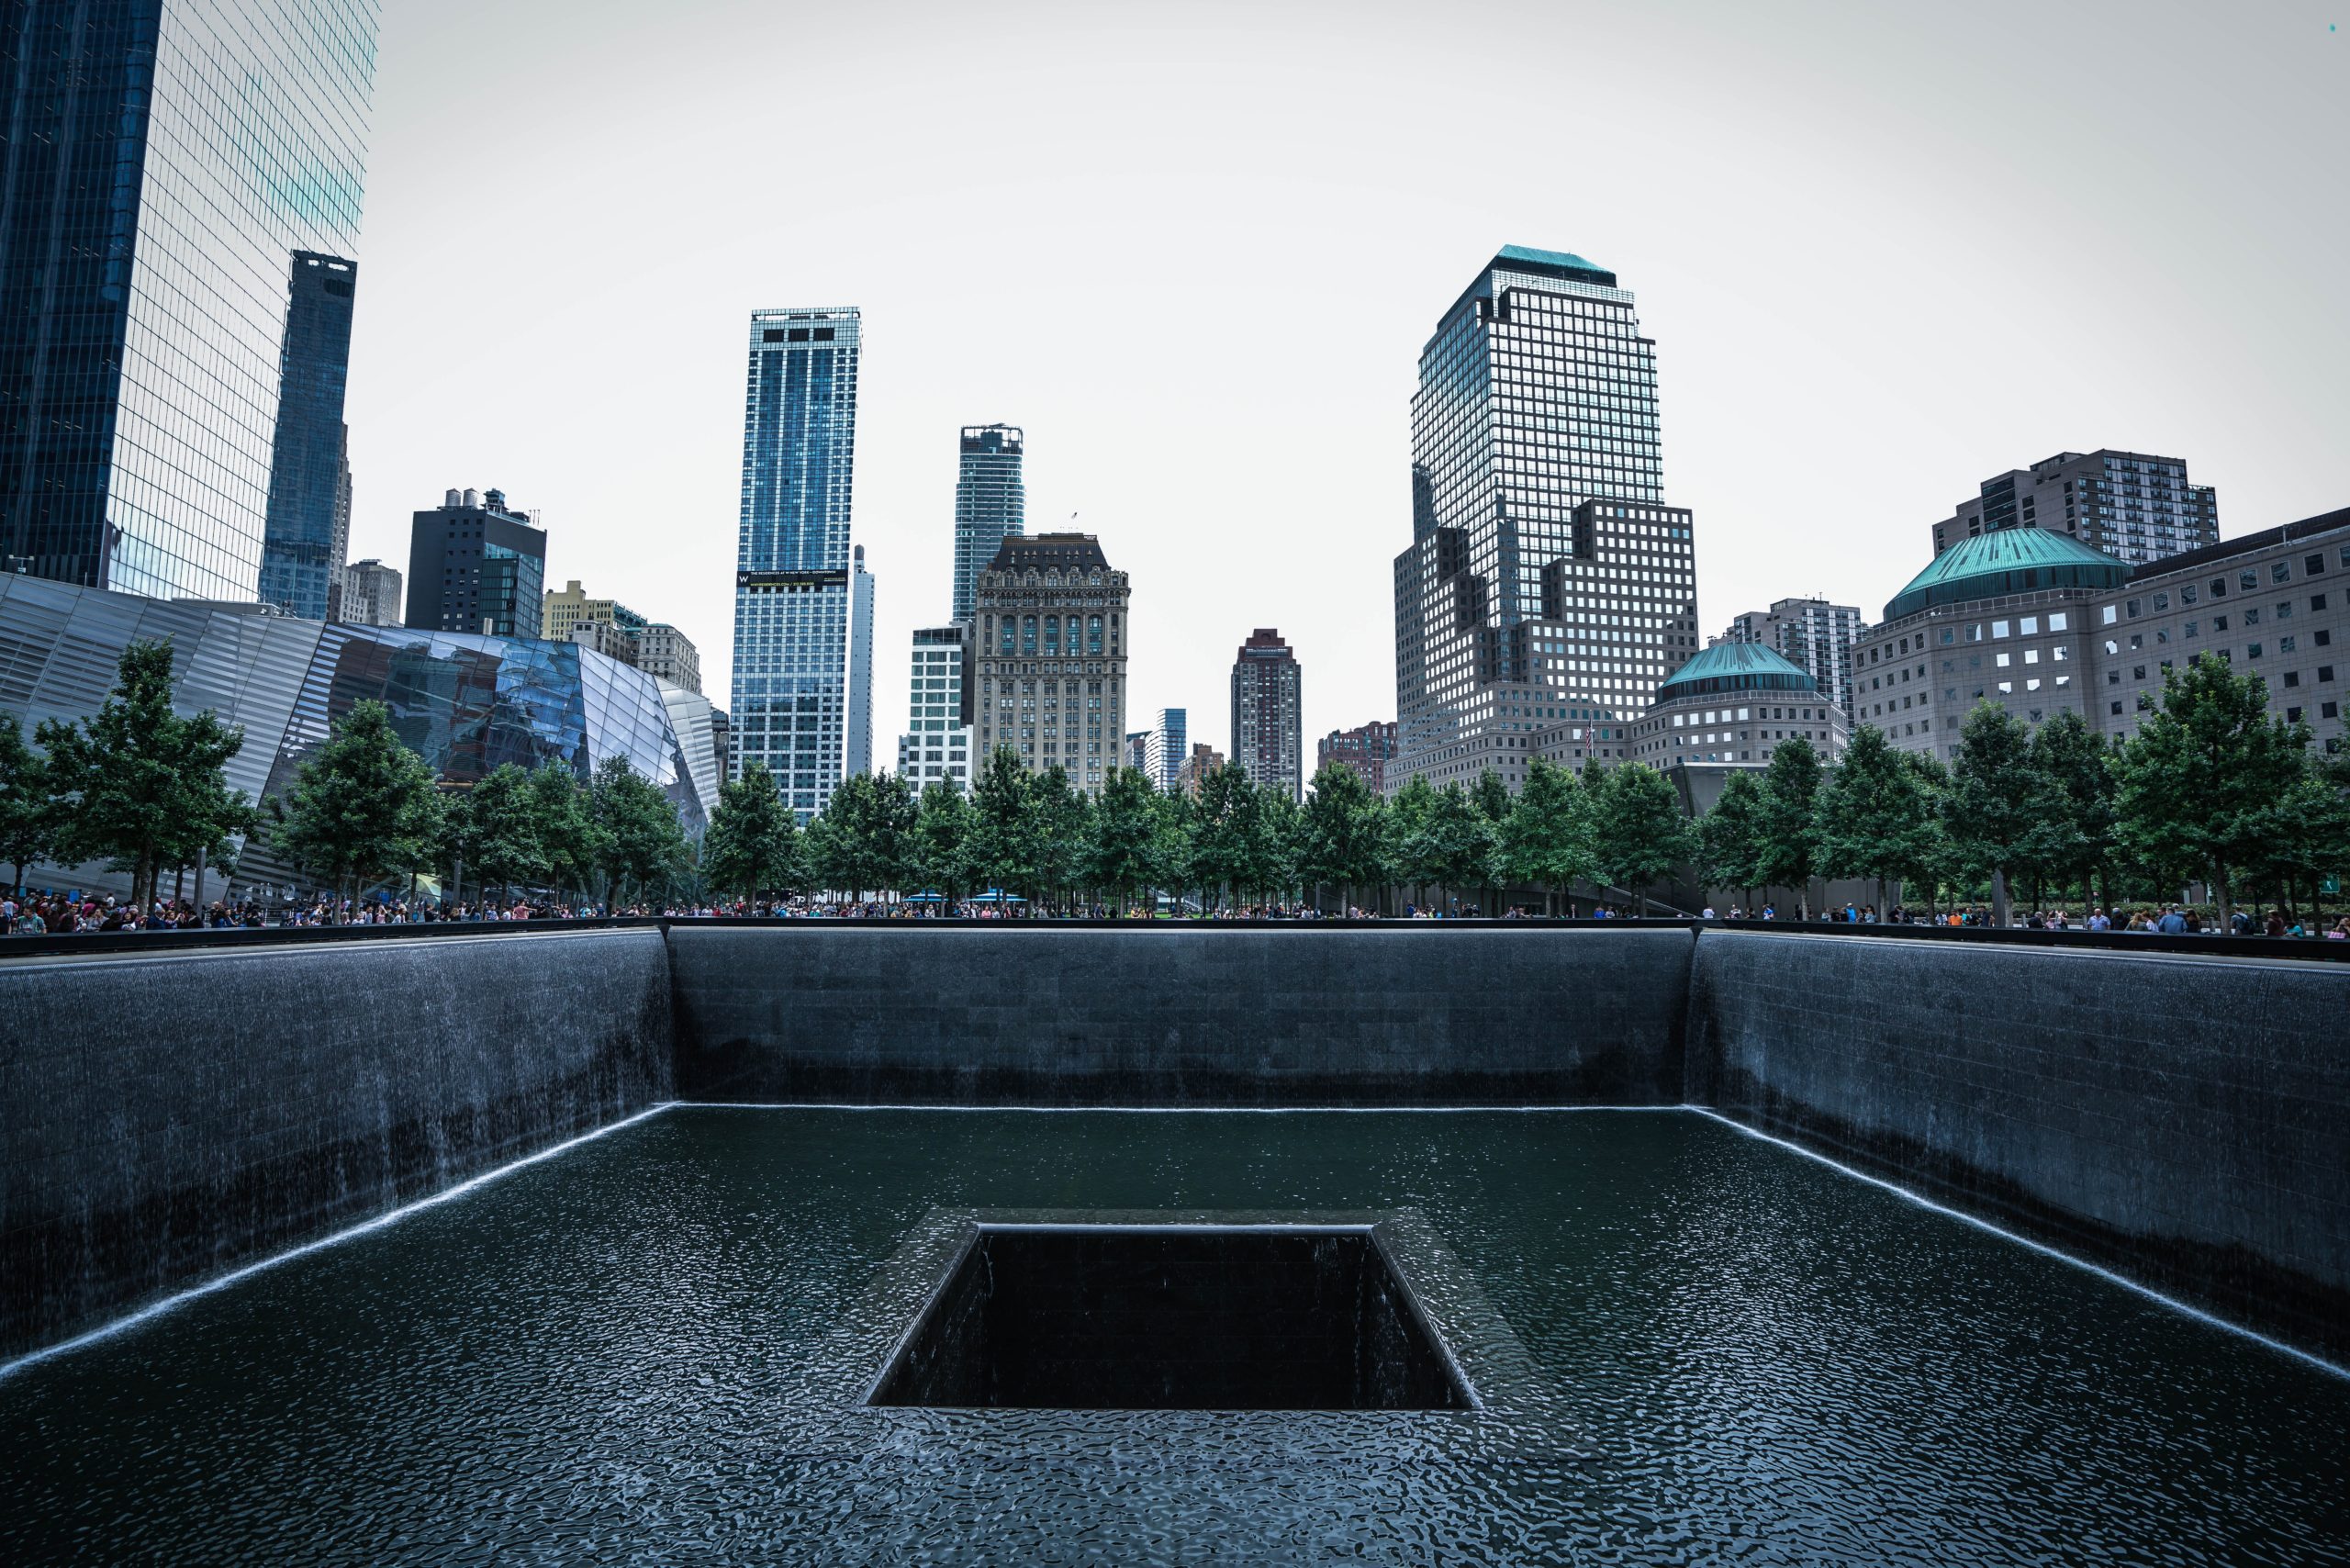 911 Memorial and Museum - New York, New York